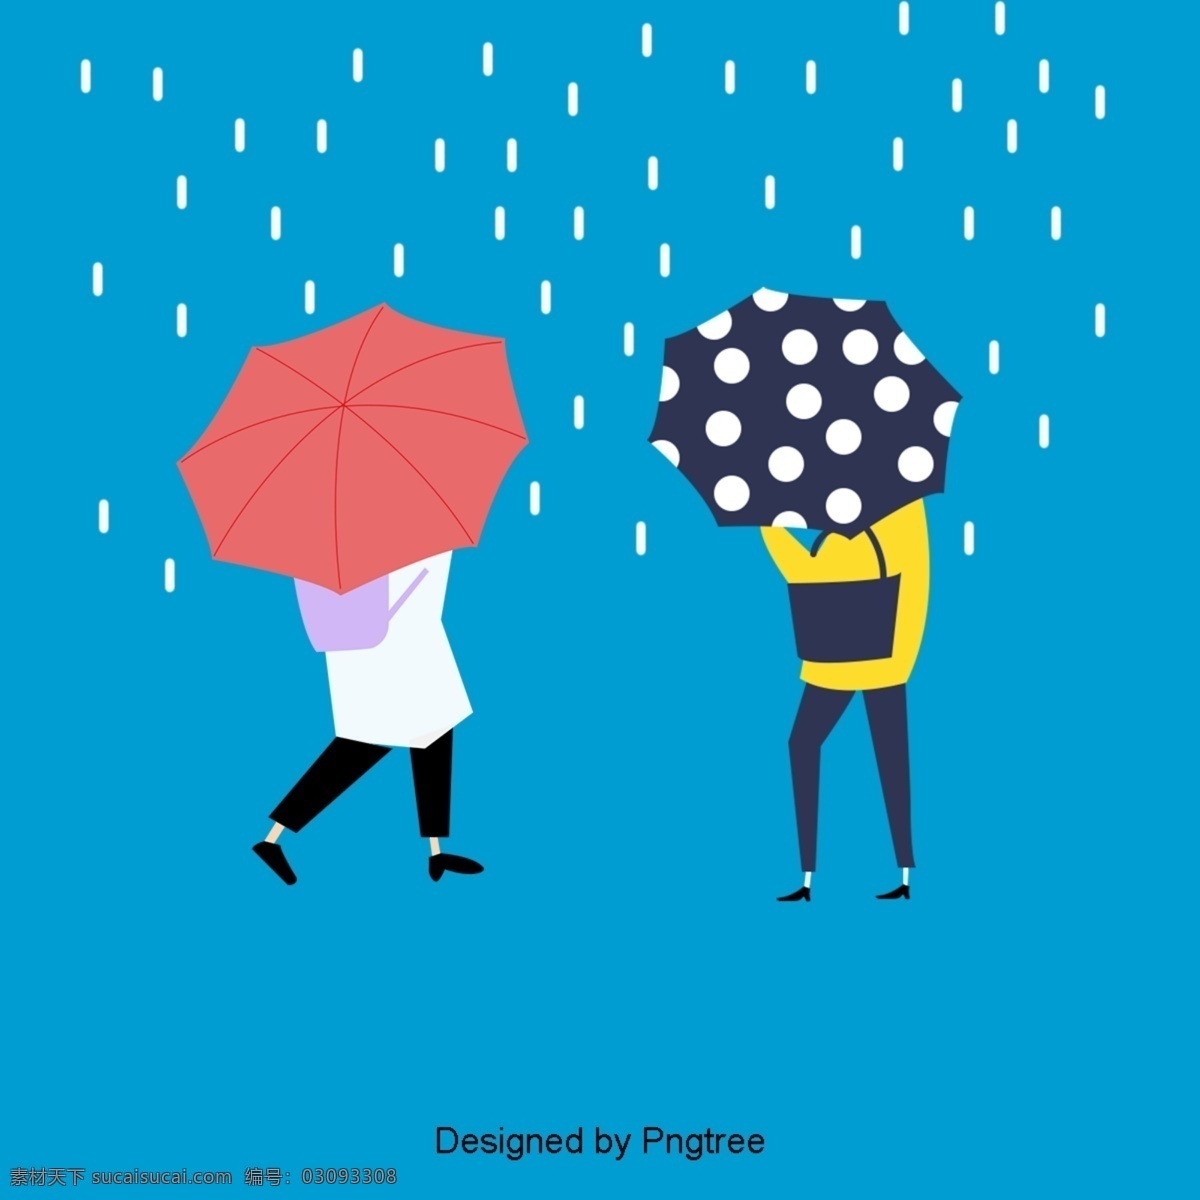 美丽 凉爽 的卡 通 云 雨天 漂亮 酷 卡通 手绘 可爱 下雨 天气 雨伞 水滴